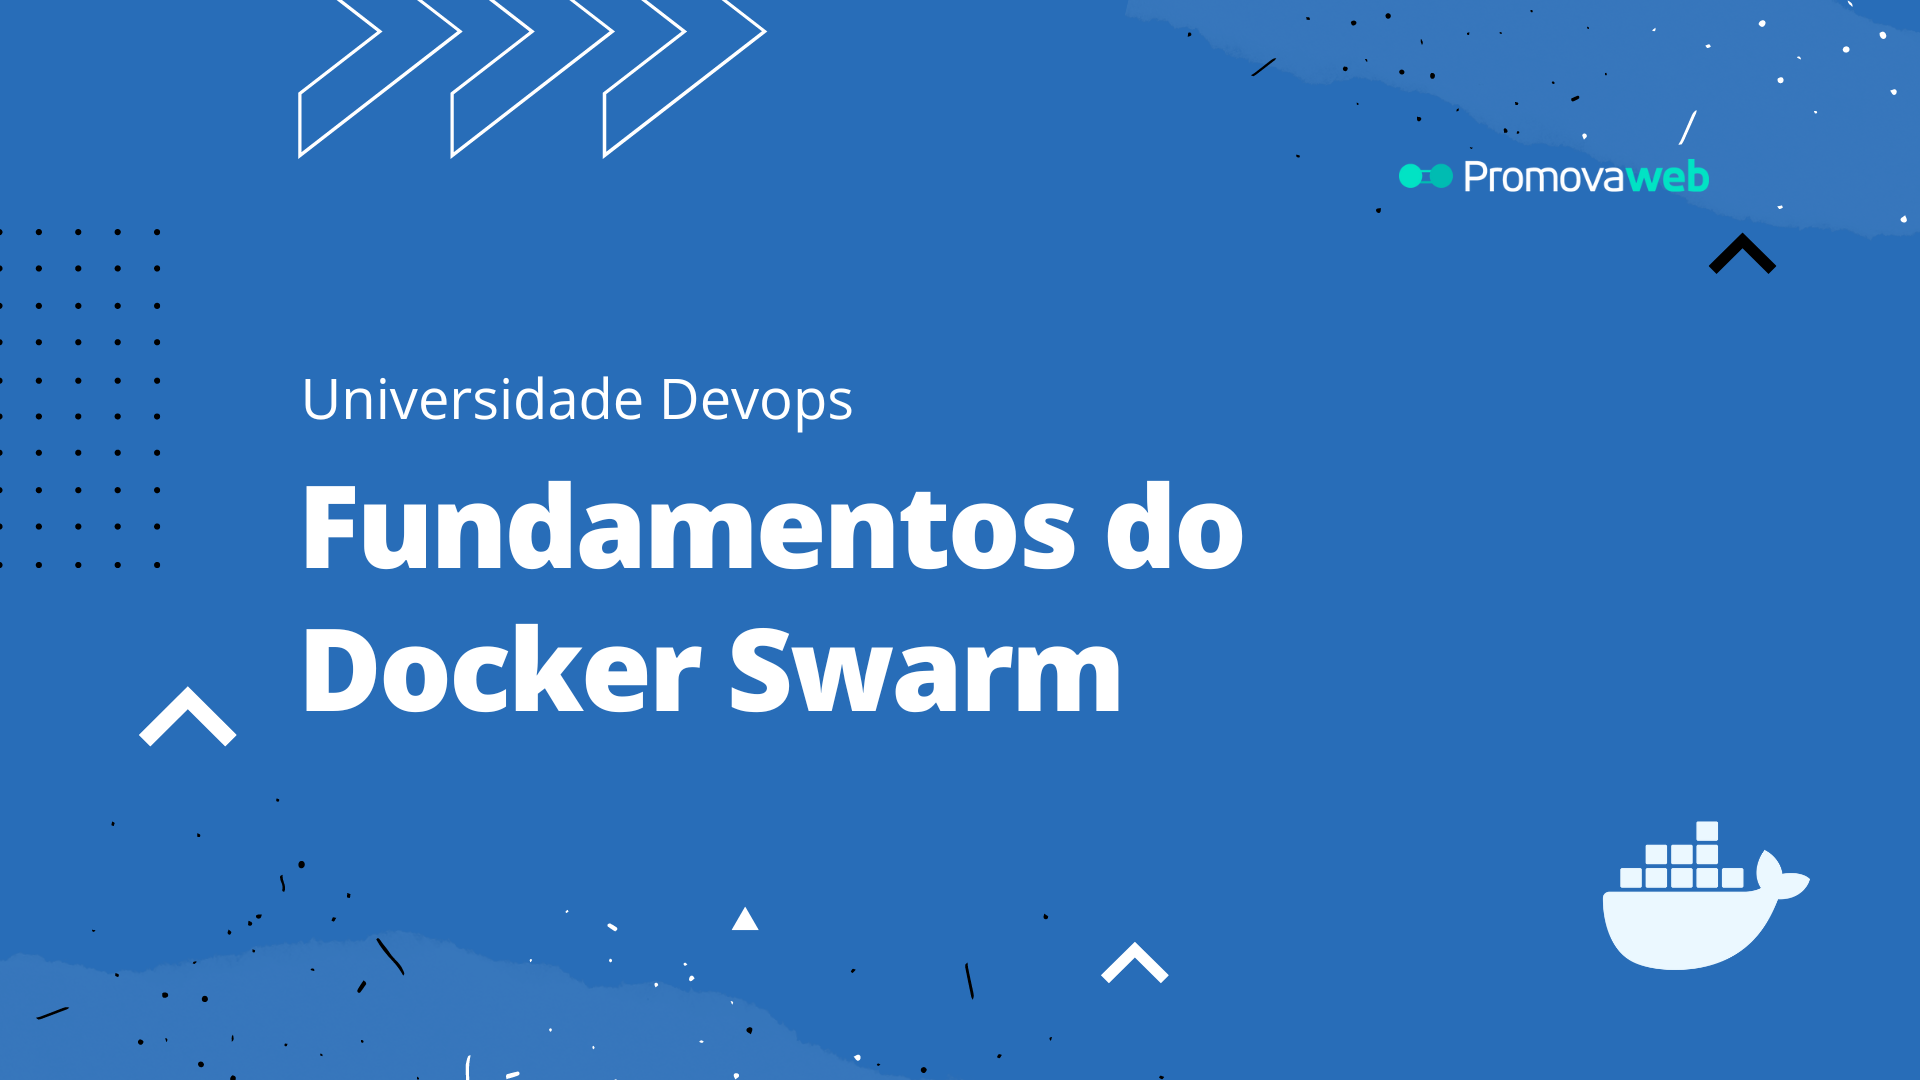 Fundamentos do Docker Swarm